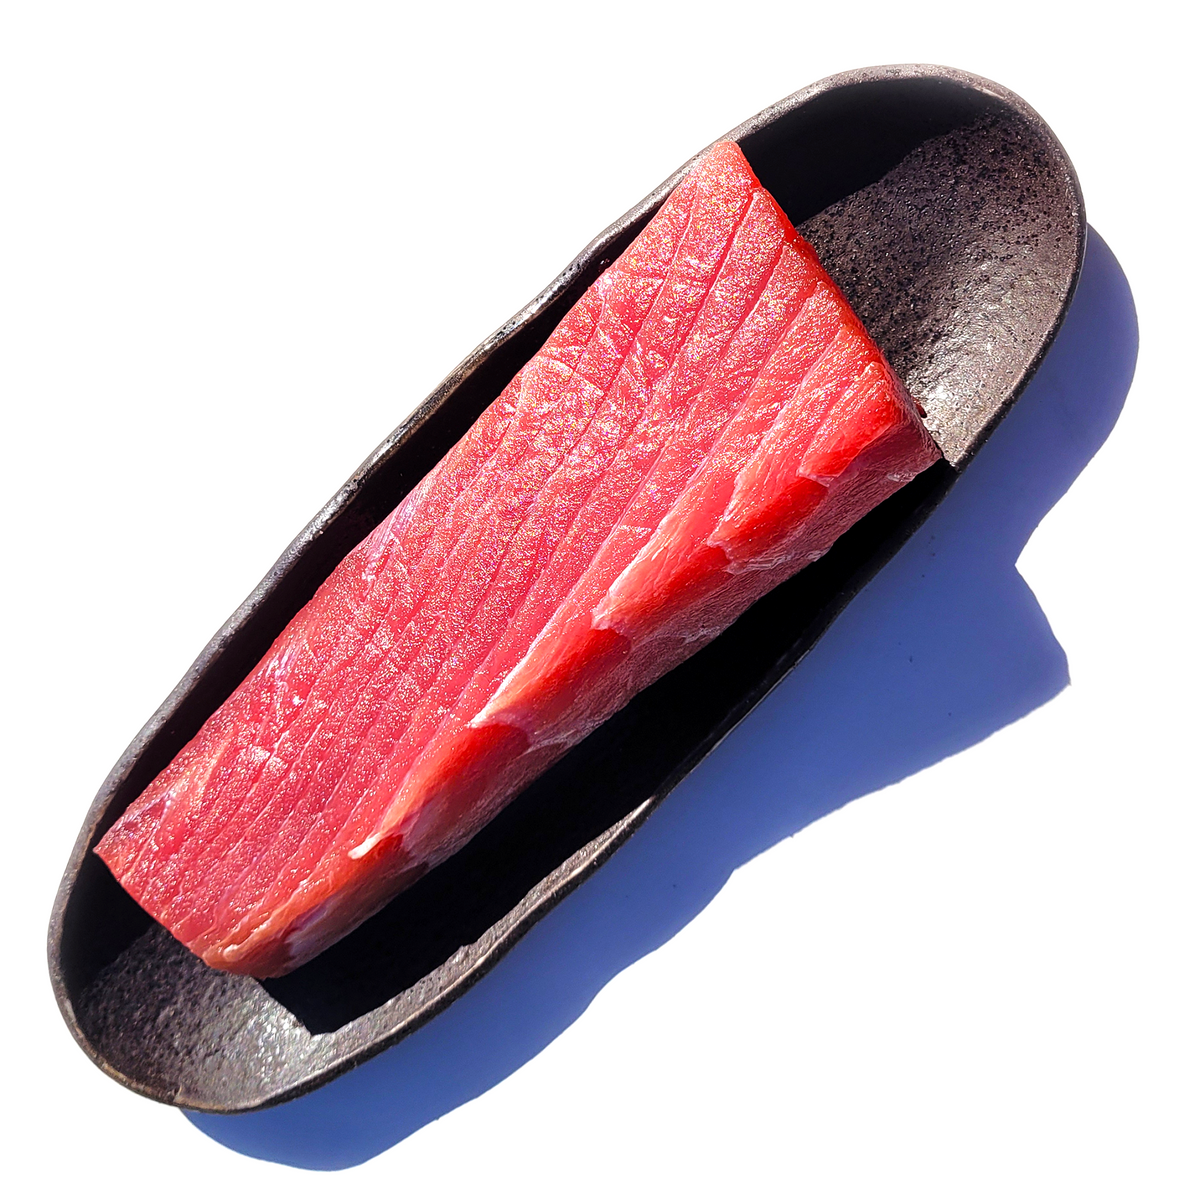 Sashimi Grade Wild Bigeye Tuna Loin